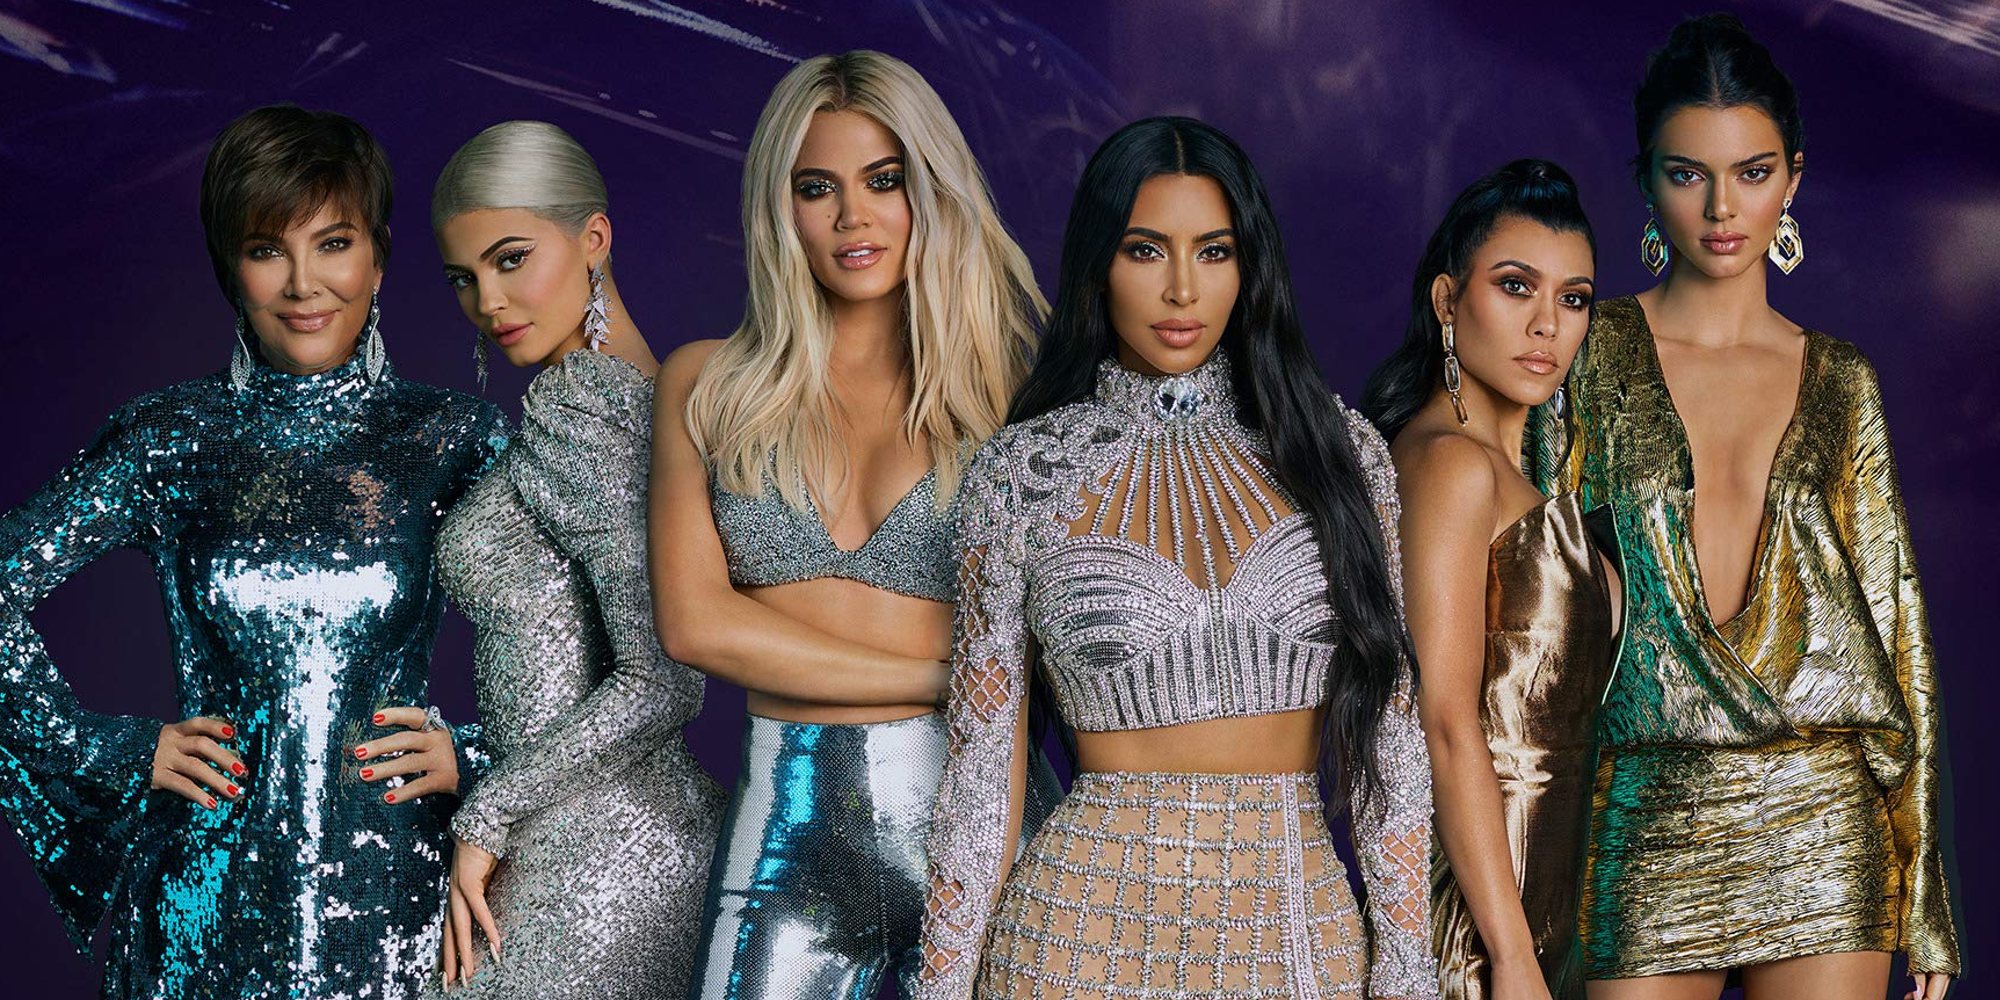 'Keeping Up With The Kardashians' llega a su fin: Kim Kardashian anuncia que la temporada 20 será la última